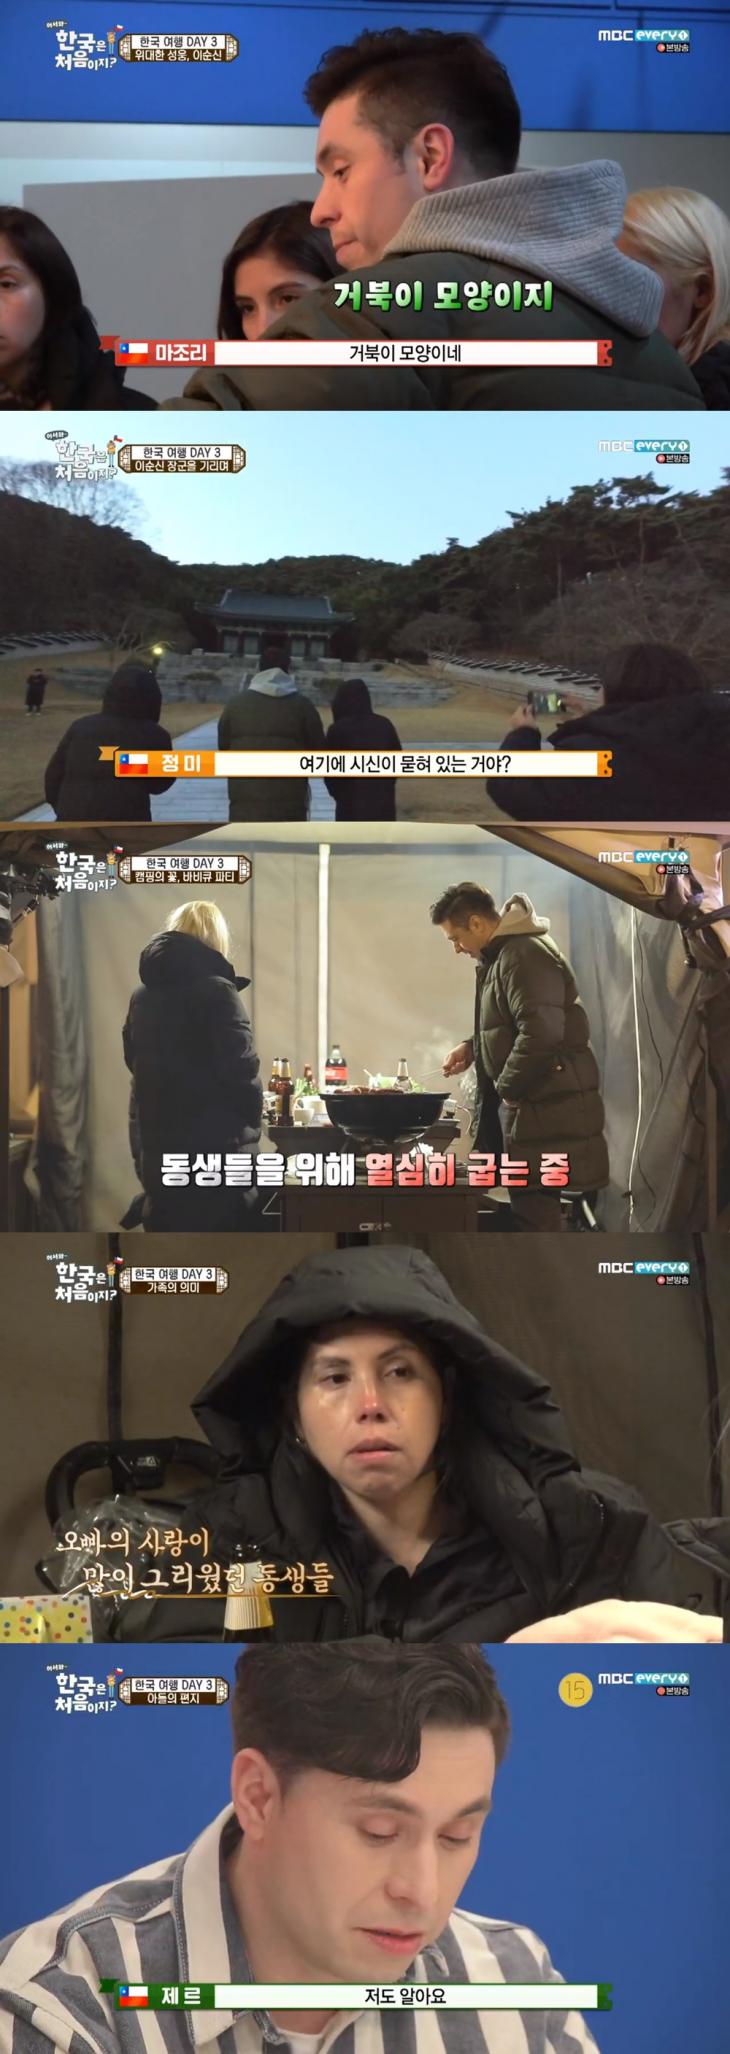 MBC에브리원 '어서와 한국은 처음이지' 방송 캡쳐